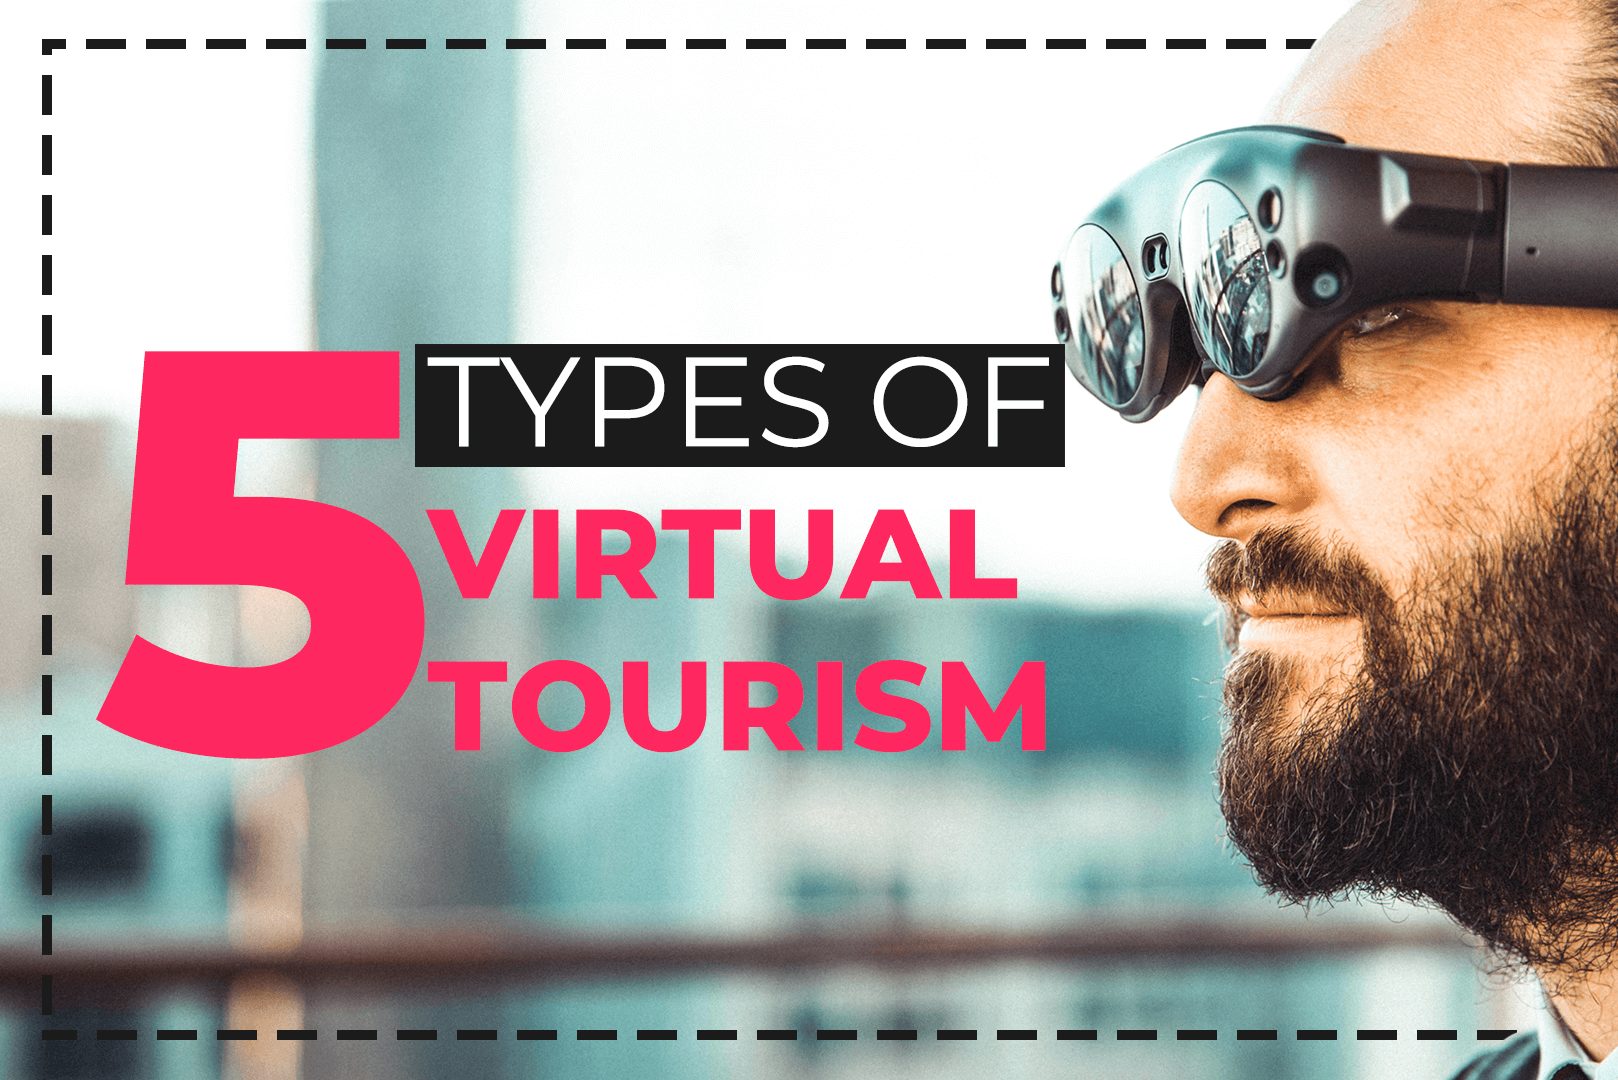 5 Types Of Virtual Tourism